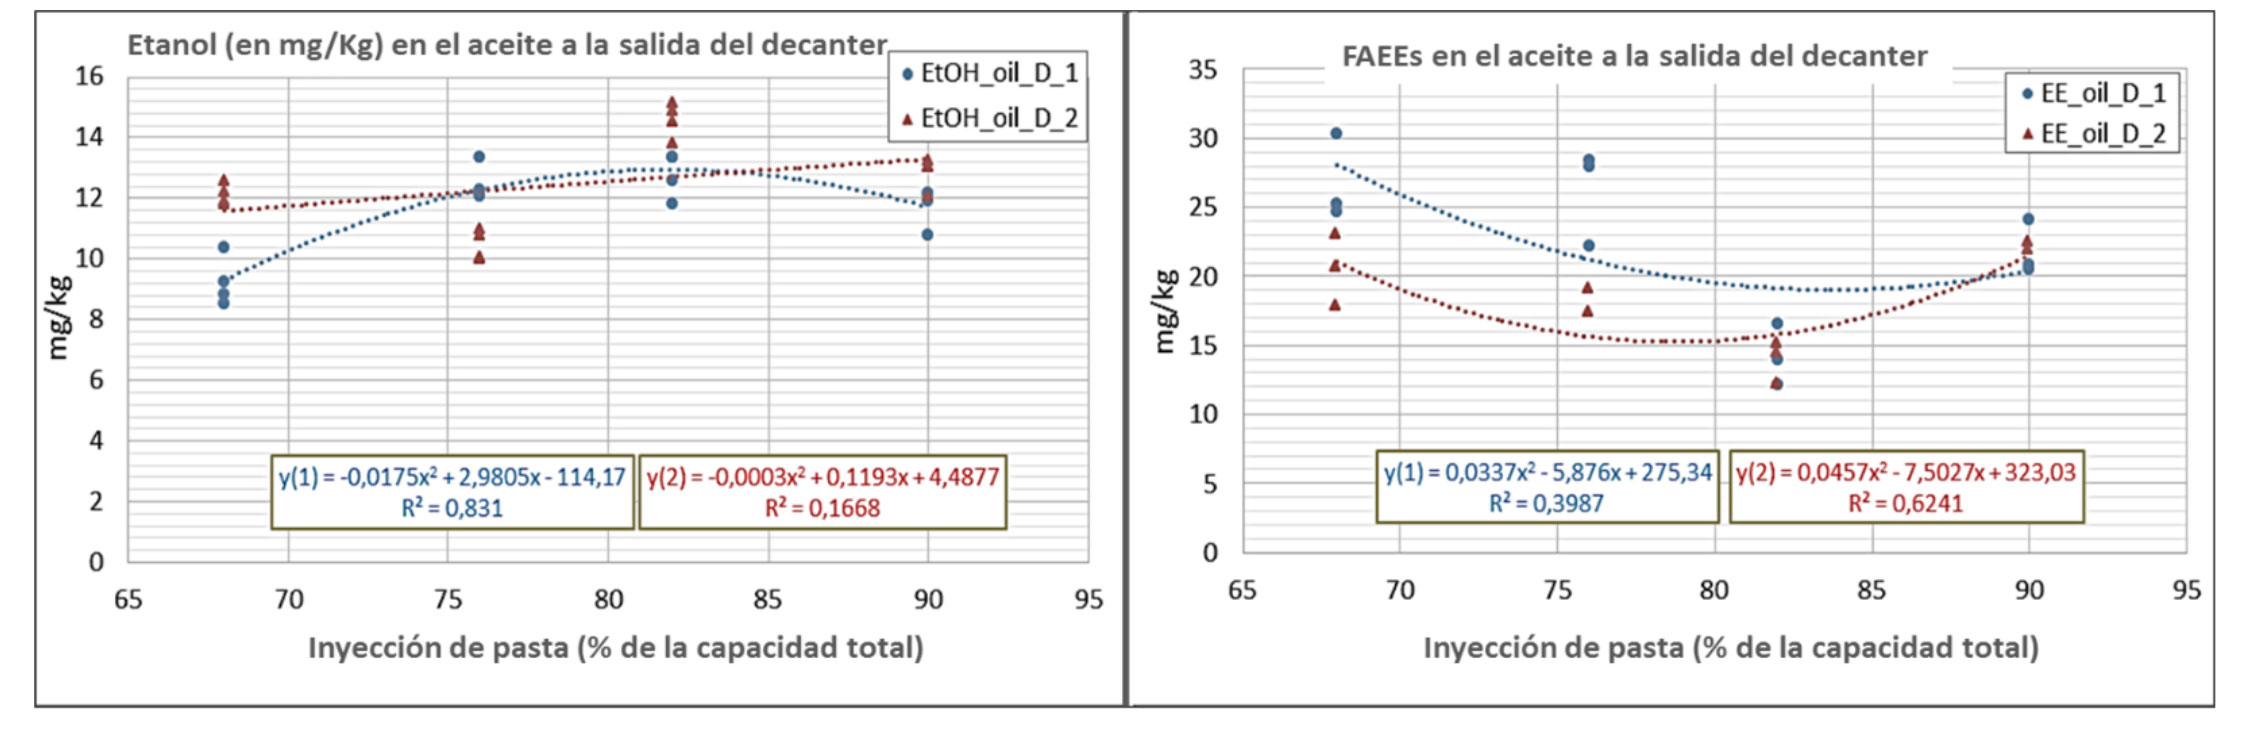 Figura 2. Efecto del ritmo de inyeccin de pasta al decanter: Contenido en etanol y esteres etlicos en el aceite a la salida dl decanter...